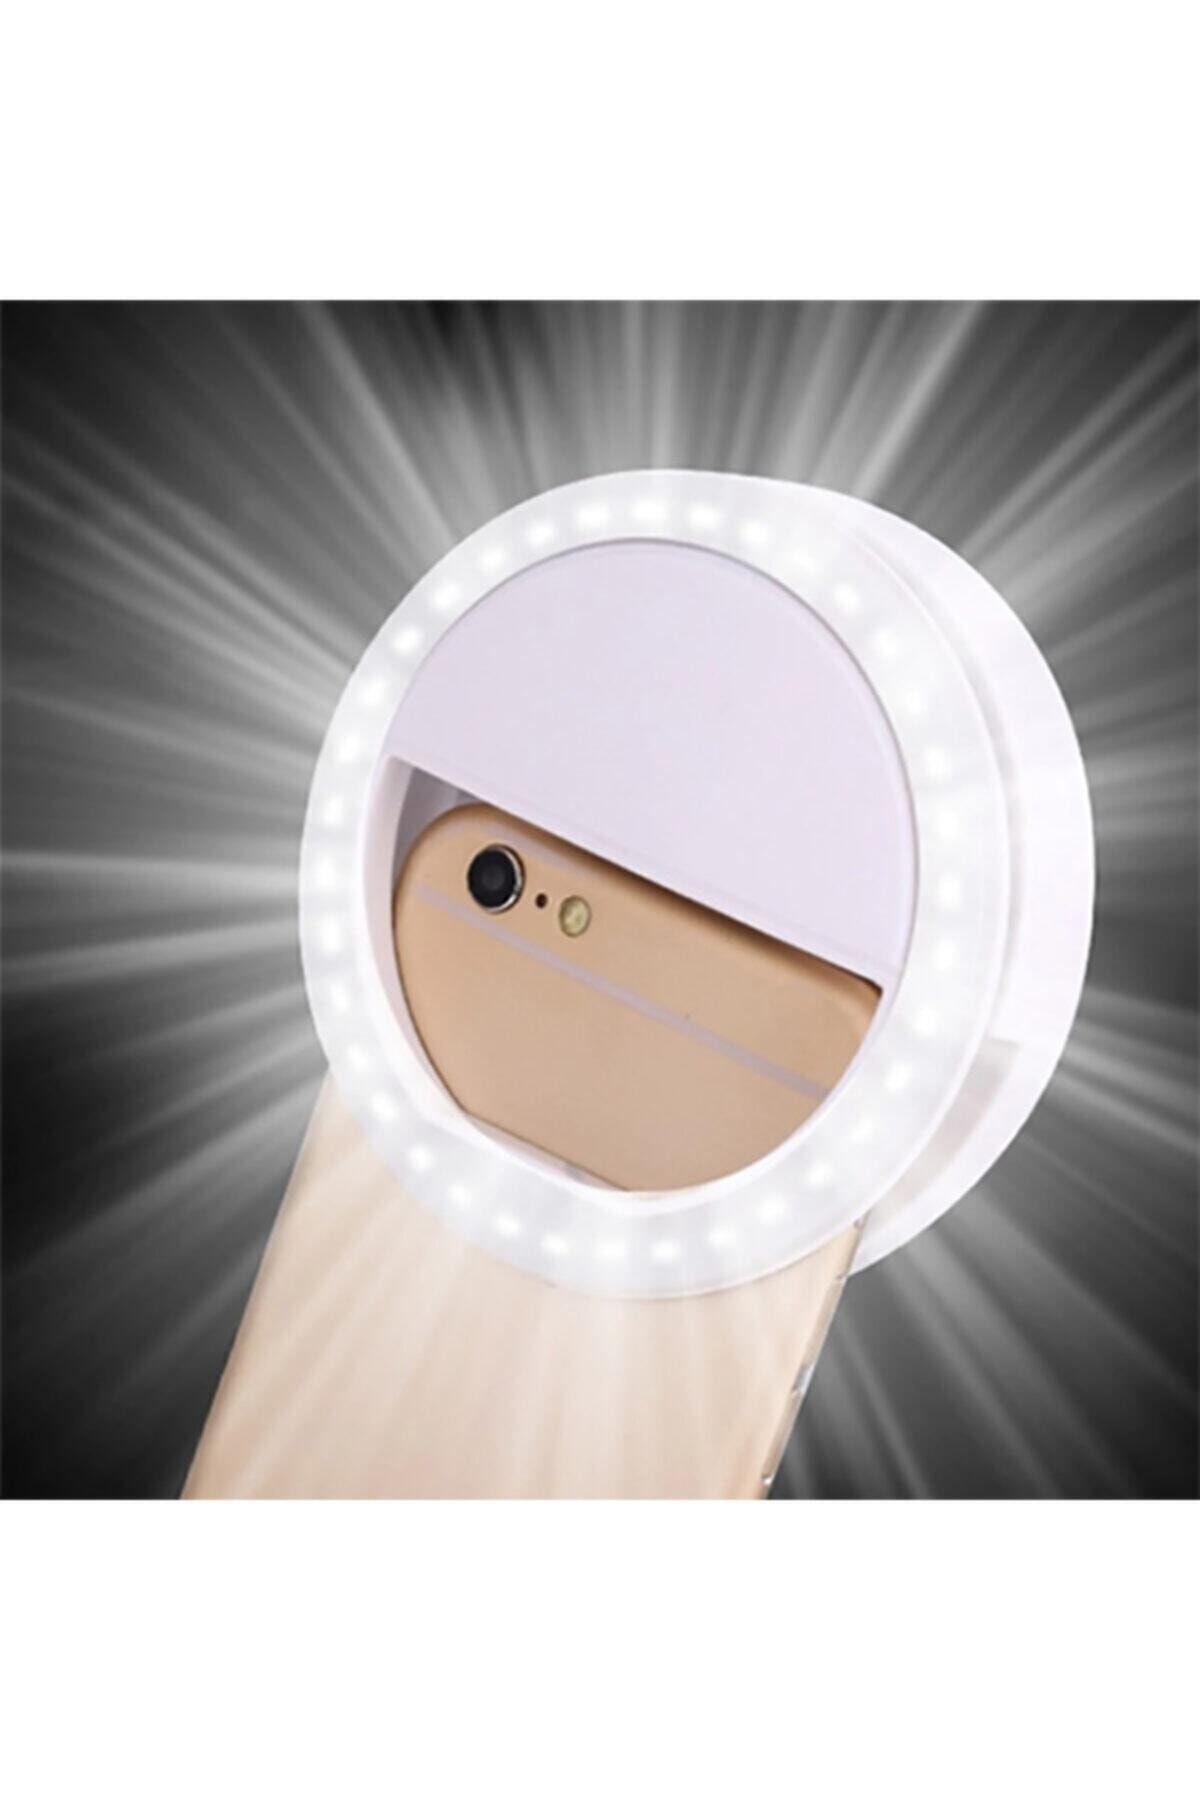 Zore Youtuber Led Selfie Led Işıklı Telefon Tutucu Makyaj Işığı Ring Light Usb Girişli